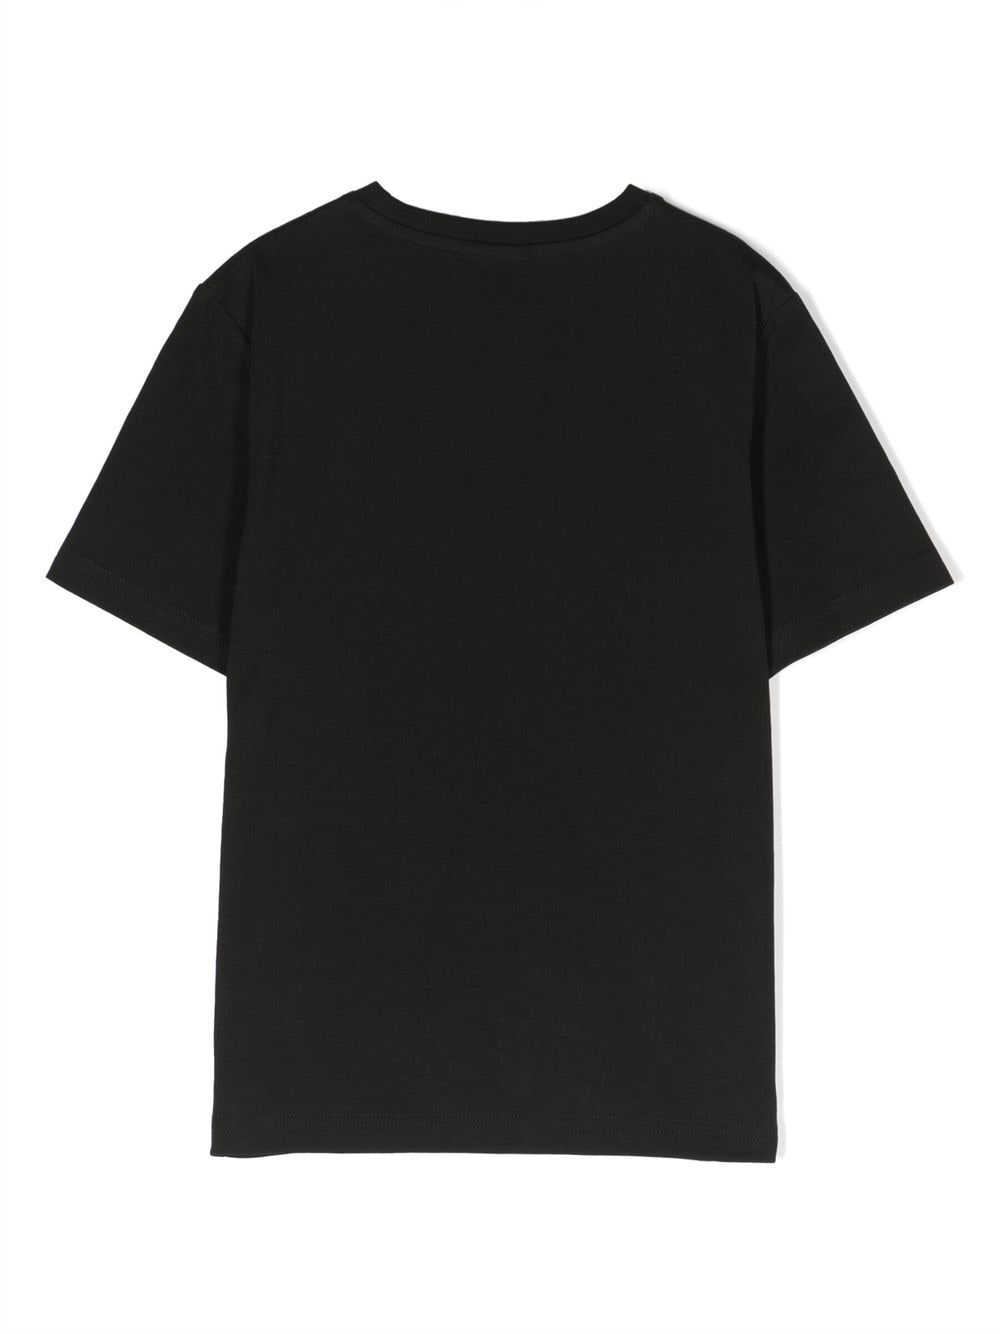 T-shirt nera per bambino con logo piccolo